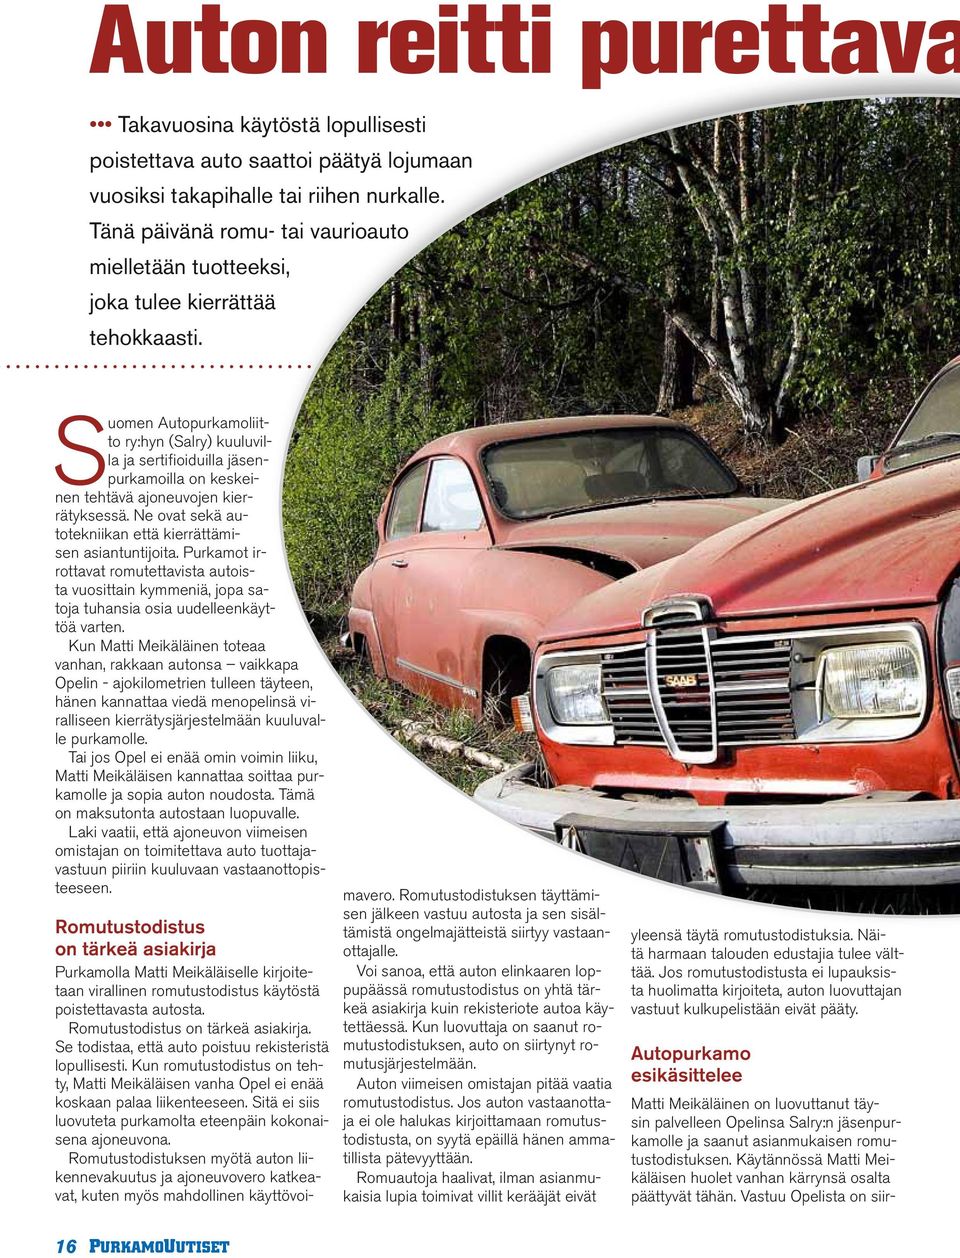 Suomen Autopurkamoliitto ry:hyn (Salry) kuuluvilla ja sertifioiduilla jäsenpurkamoilla on keskeinen tehtävä ajoneuvojen kierrätyksessä. Ne ovat sekä autotekniikan että kierrättämisen asiantuntijoita.